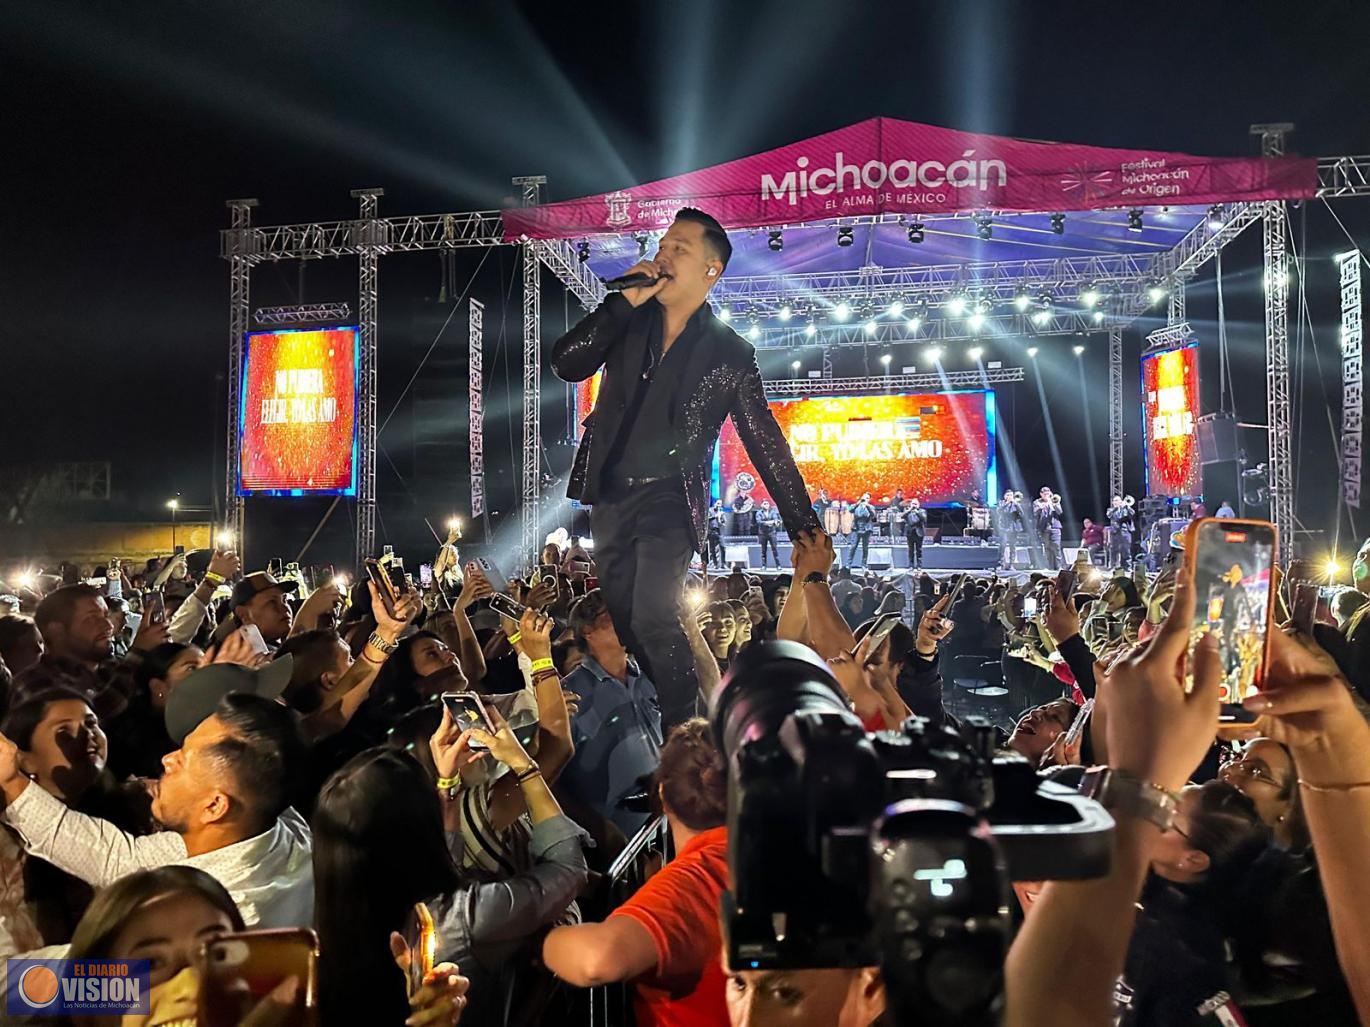 Éxito total, más de 25 mil cantaron con La Arrolladora en el Festival Michoacán de Origen